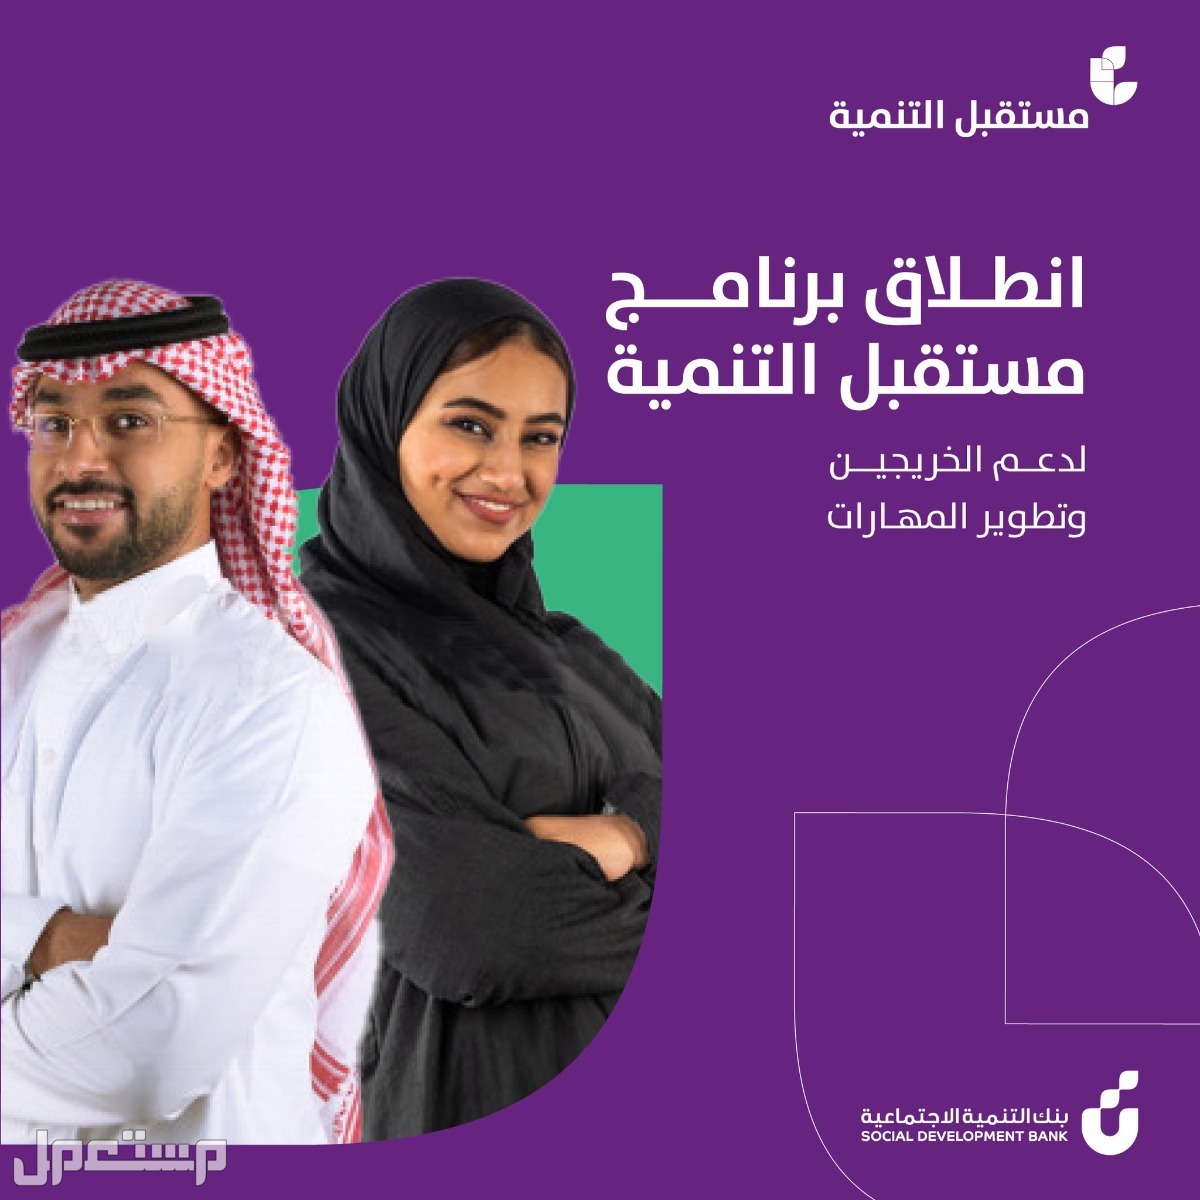 كيفية التقديم على برنامج مستقبل التنمية للخريجين في بنك التنمية الاجتماعية في السعودية التقديم على برنامج مستقبل التنمية للخريجين